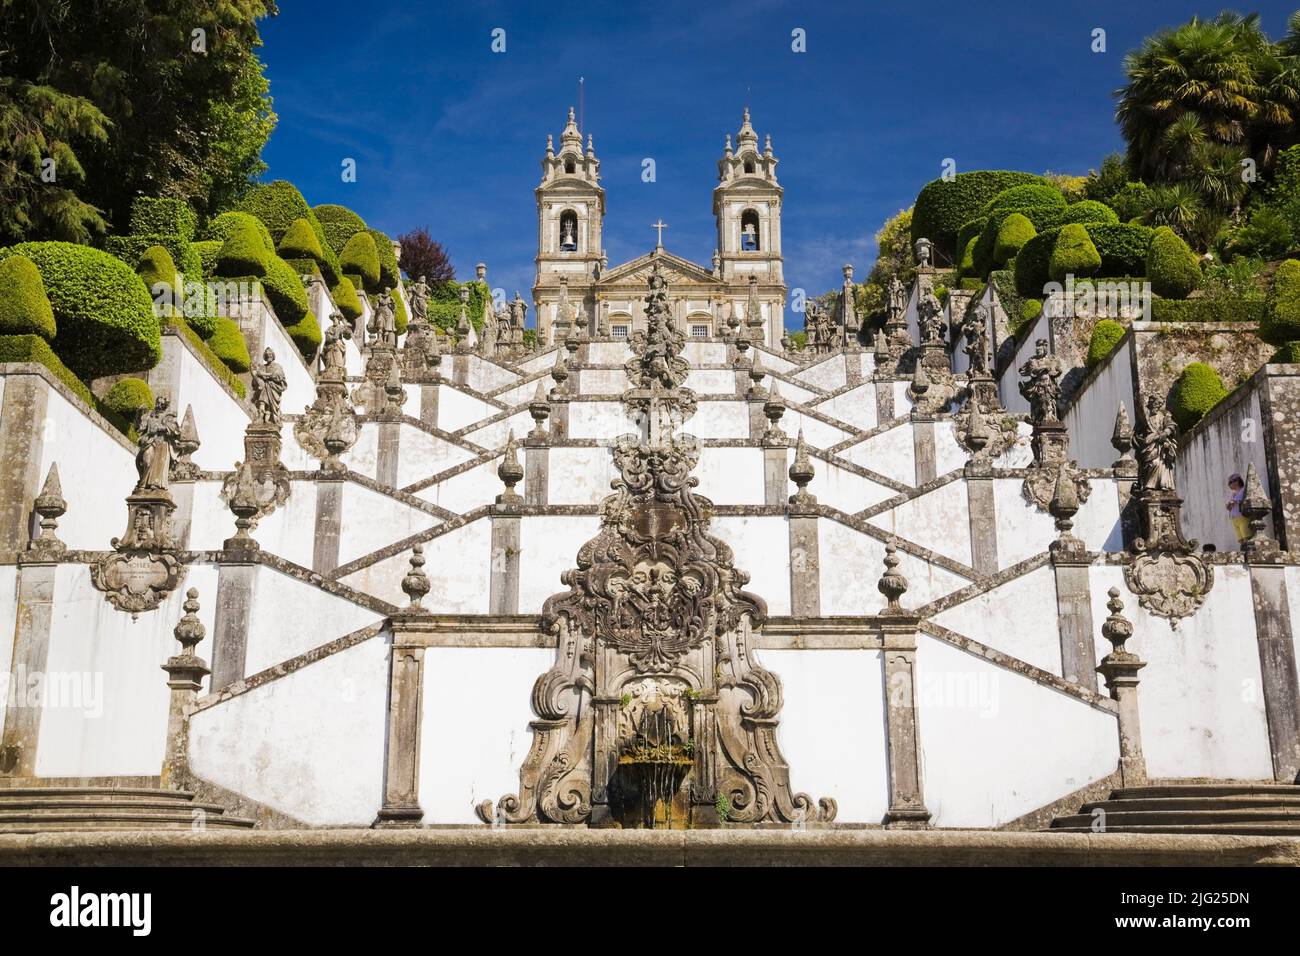 L'escalier des cinq sens menant à l'église sur le terrain du sanctuaire BOM Jesus do Monte à Tenoes, Braga, Portugal, Europe. Banque D'Images